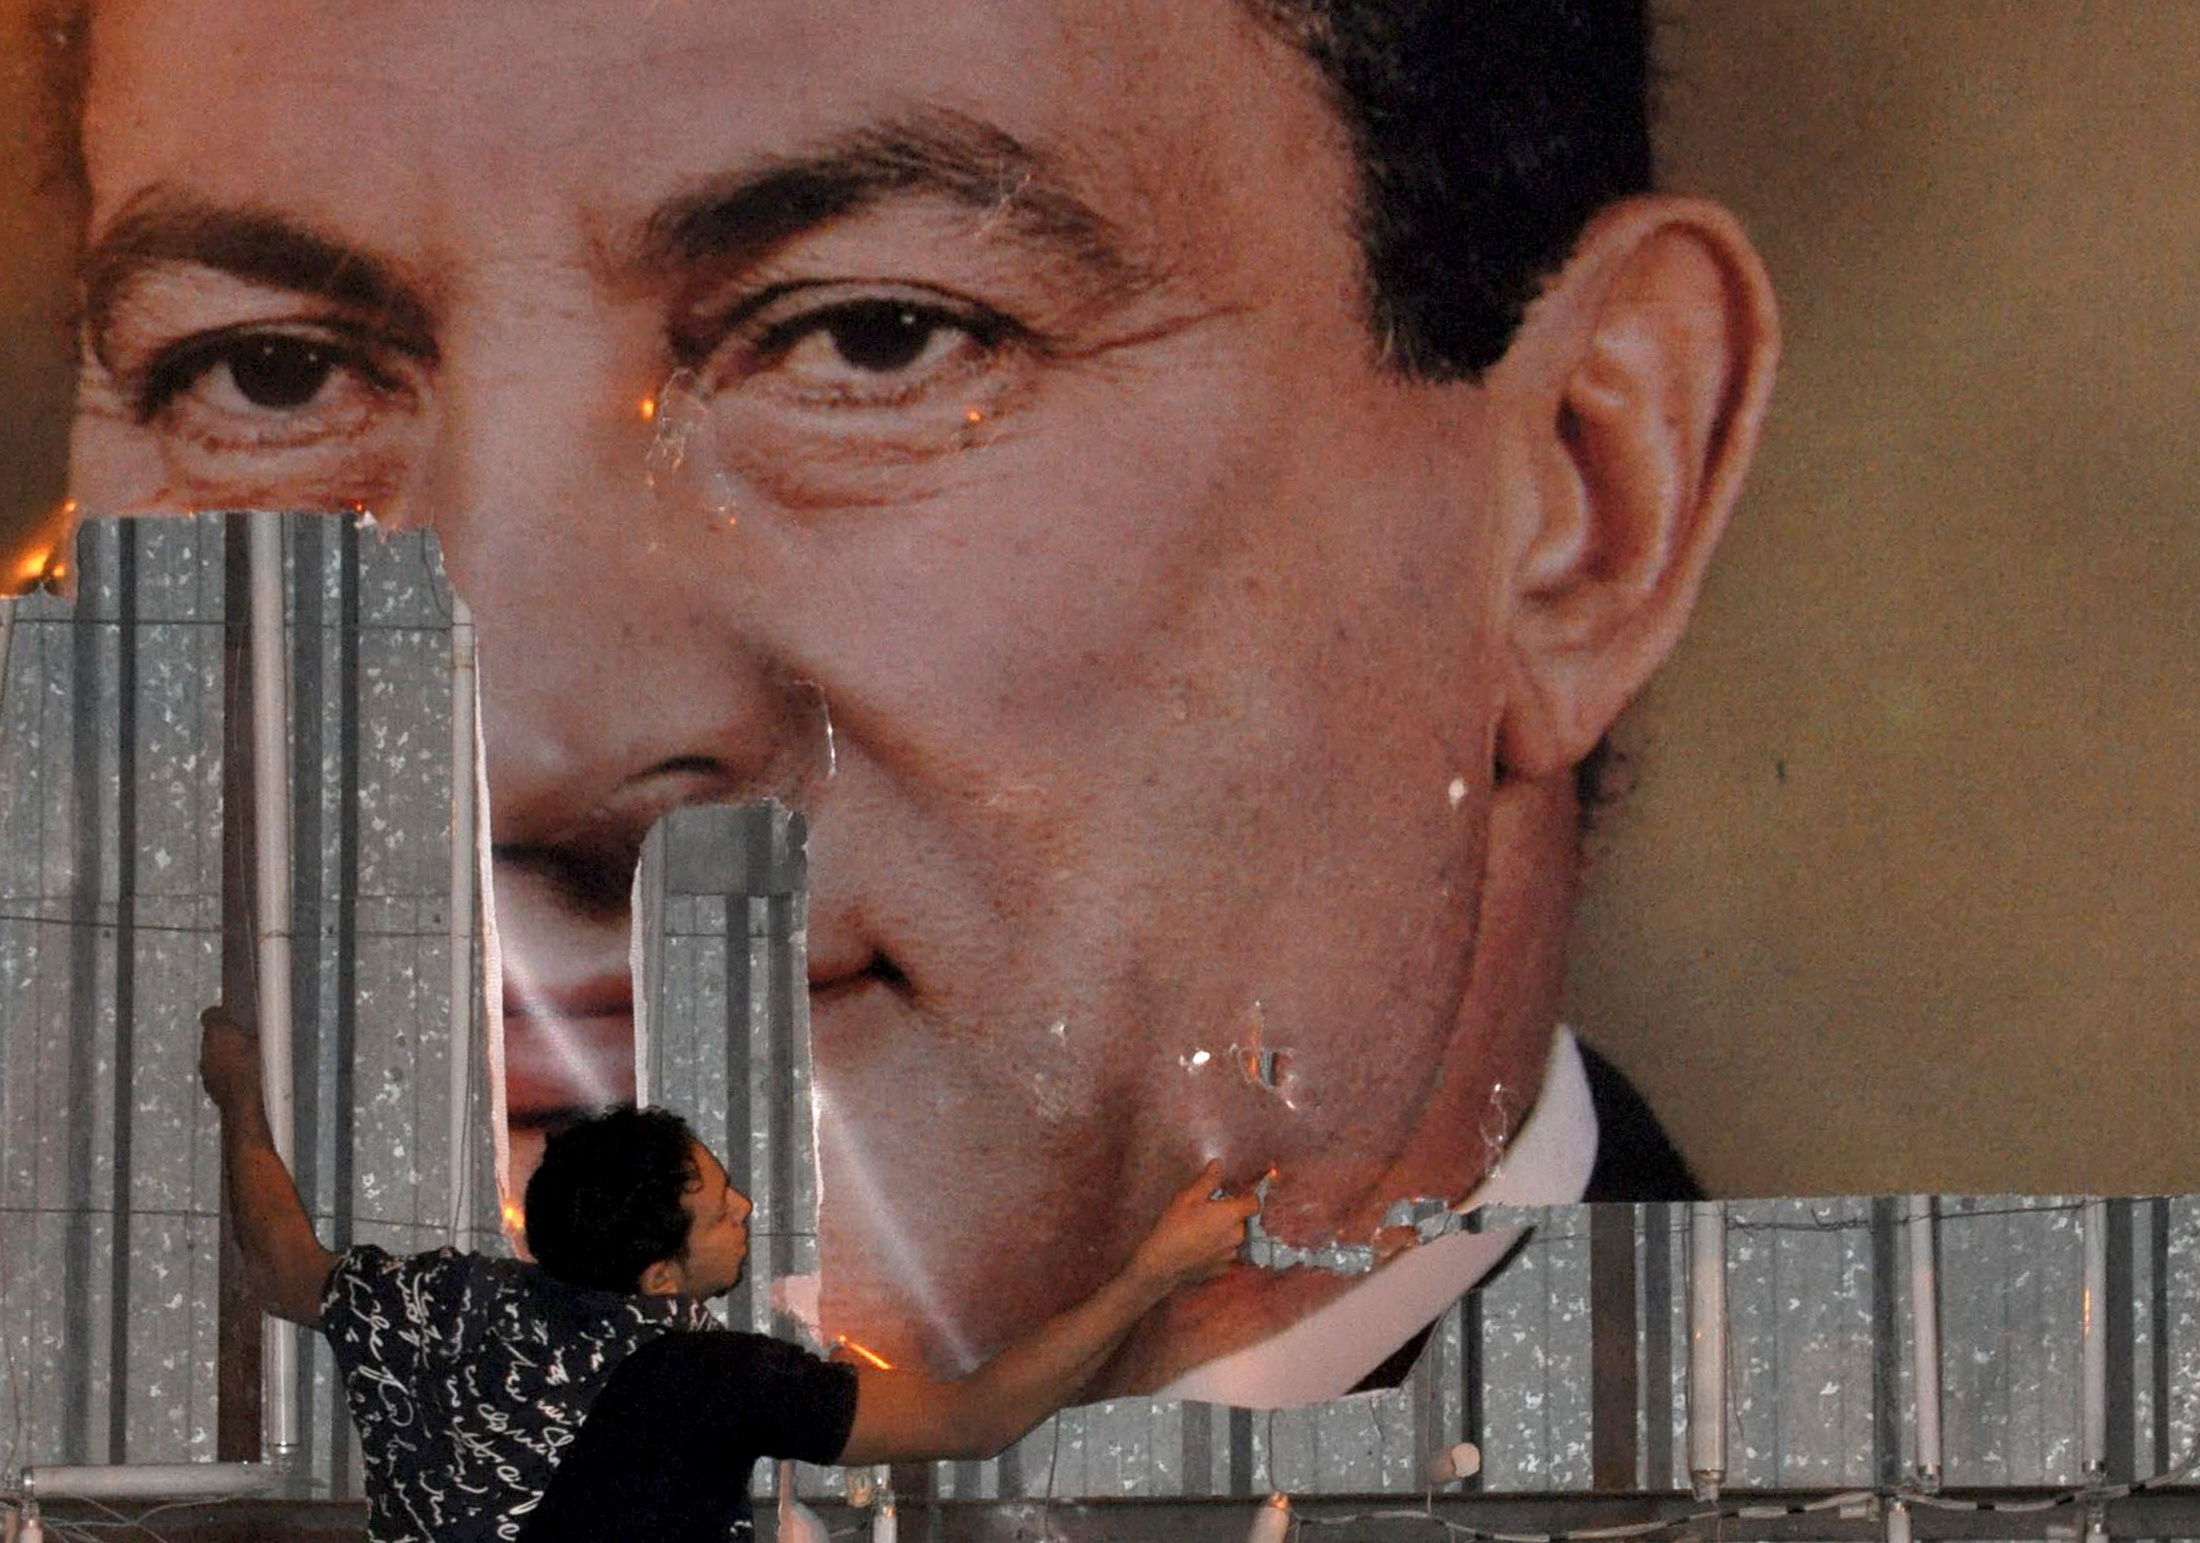 Un manifestante desfigura una imagen del presidente egipcio Hosni Mubarak en Alejandría, el 25 de enero de 2011 (REUTERS/Stringer/File Photo)